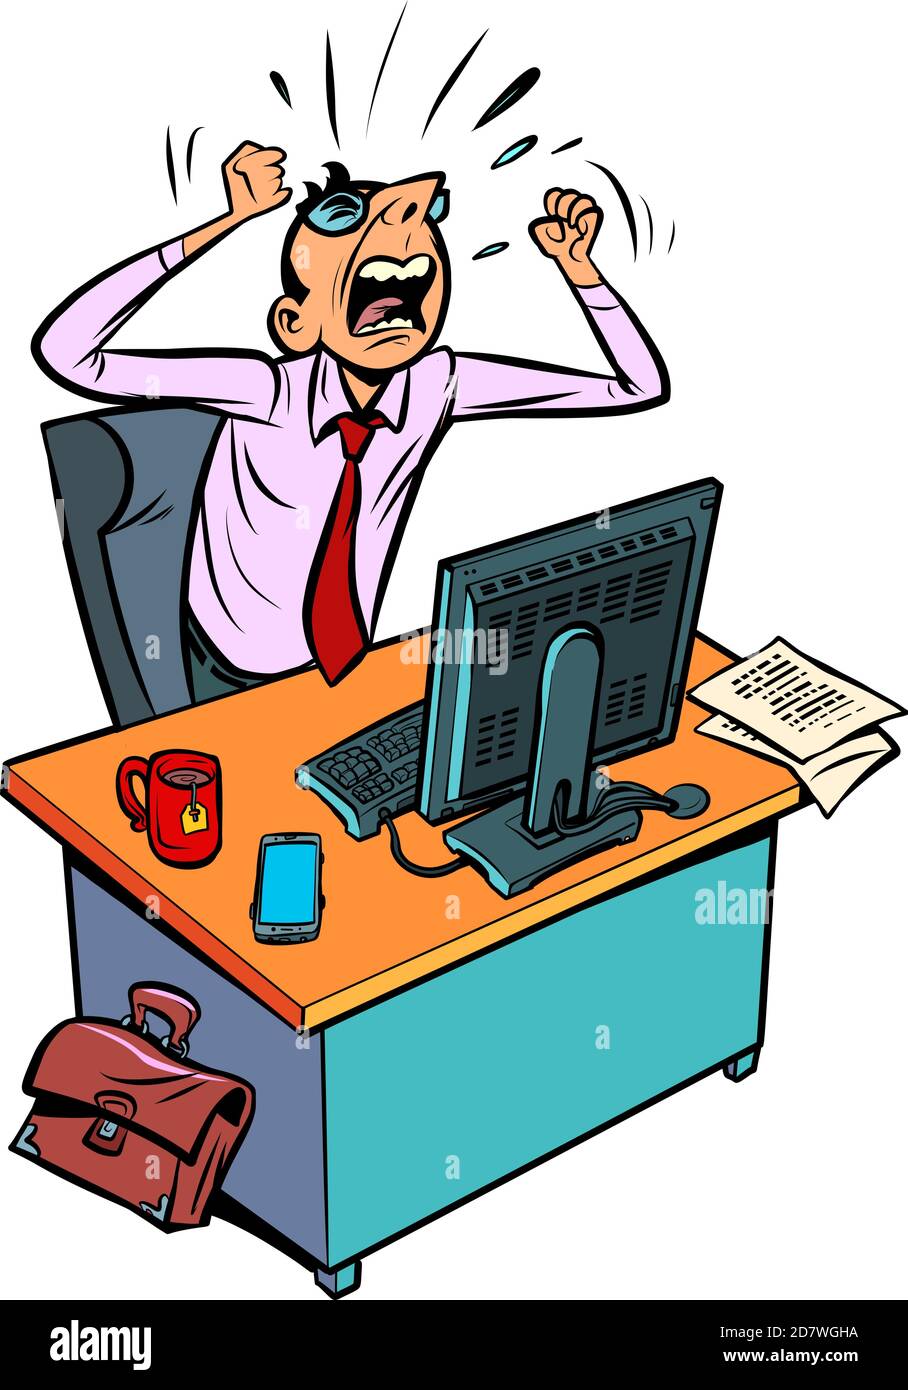 un homme d'affaires furieux et furieux travaille dans un bureau de un ordinateur Illustration de Vecteur